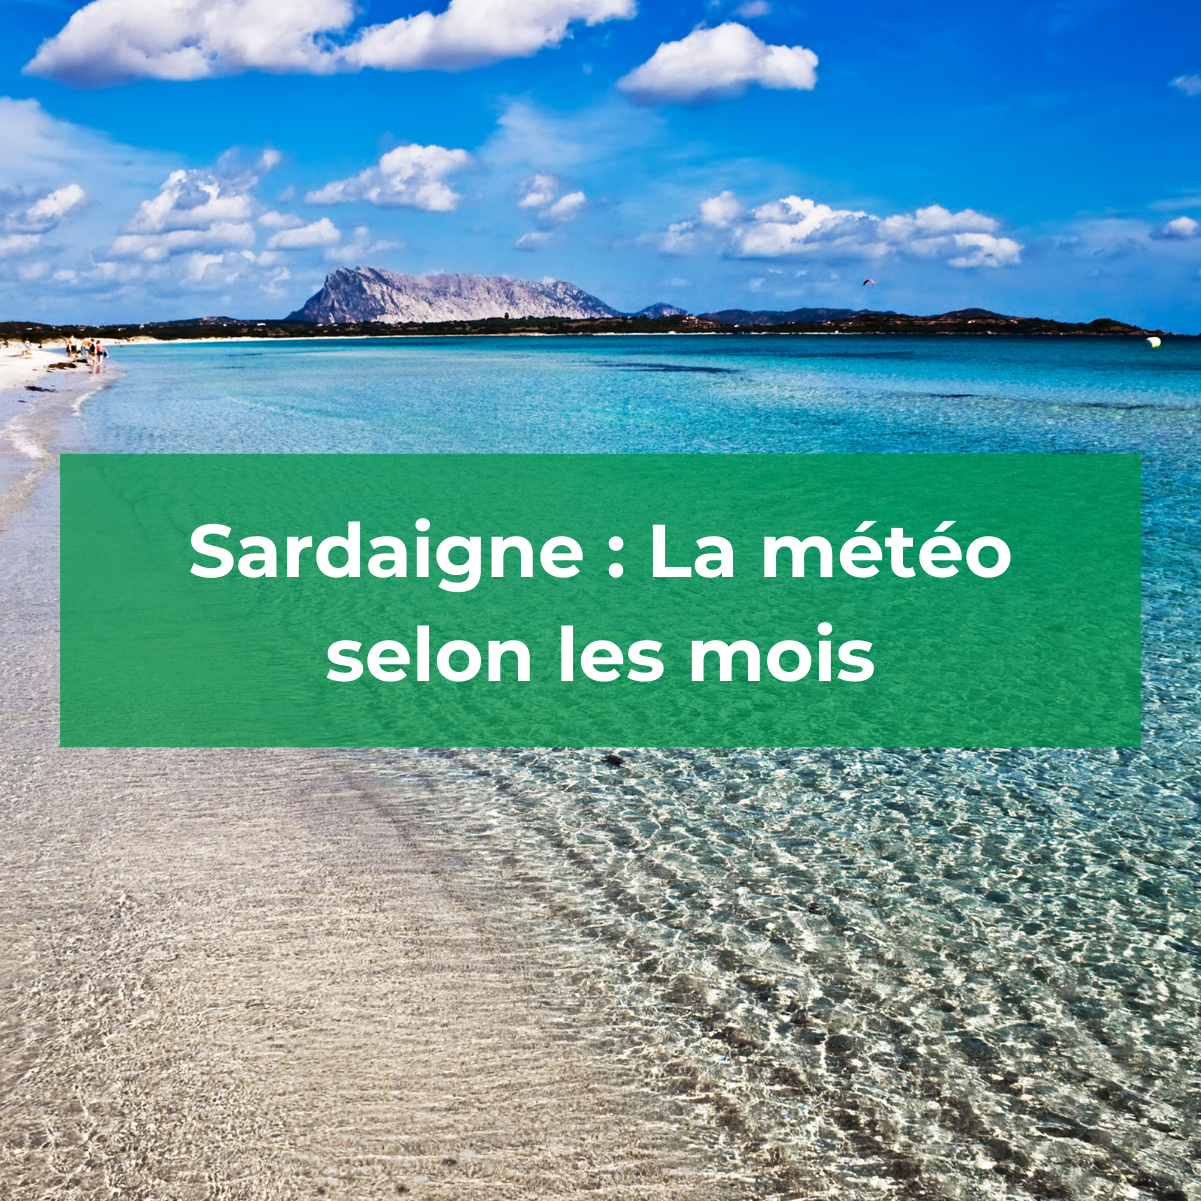 Sardaigne : La météo selon les mois